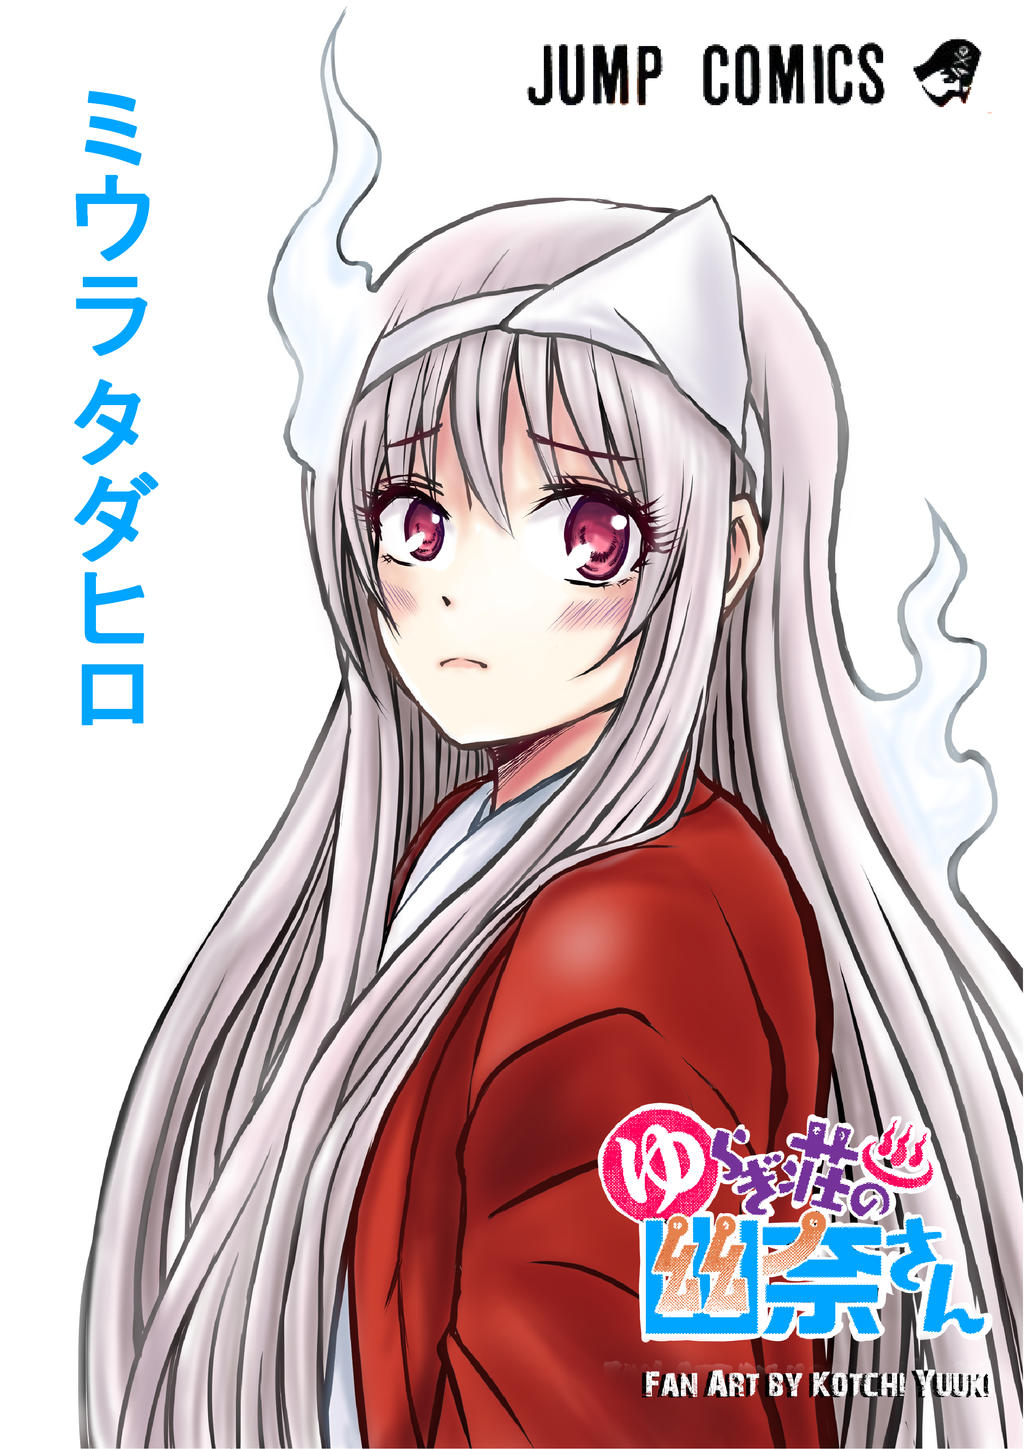 Yuragi-sou no Yuuna-san Manga